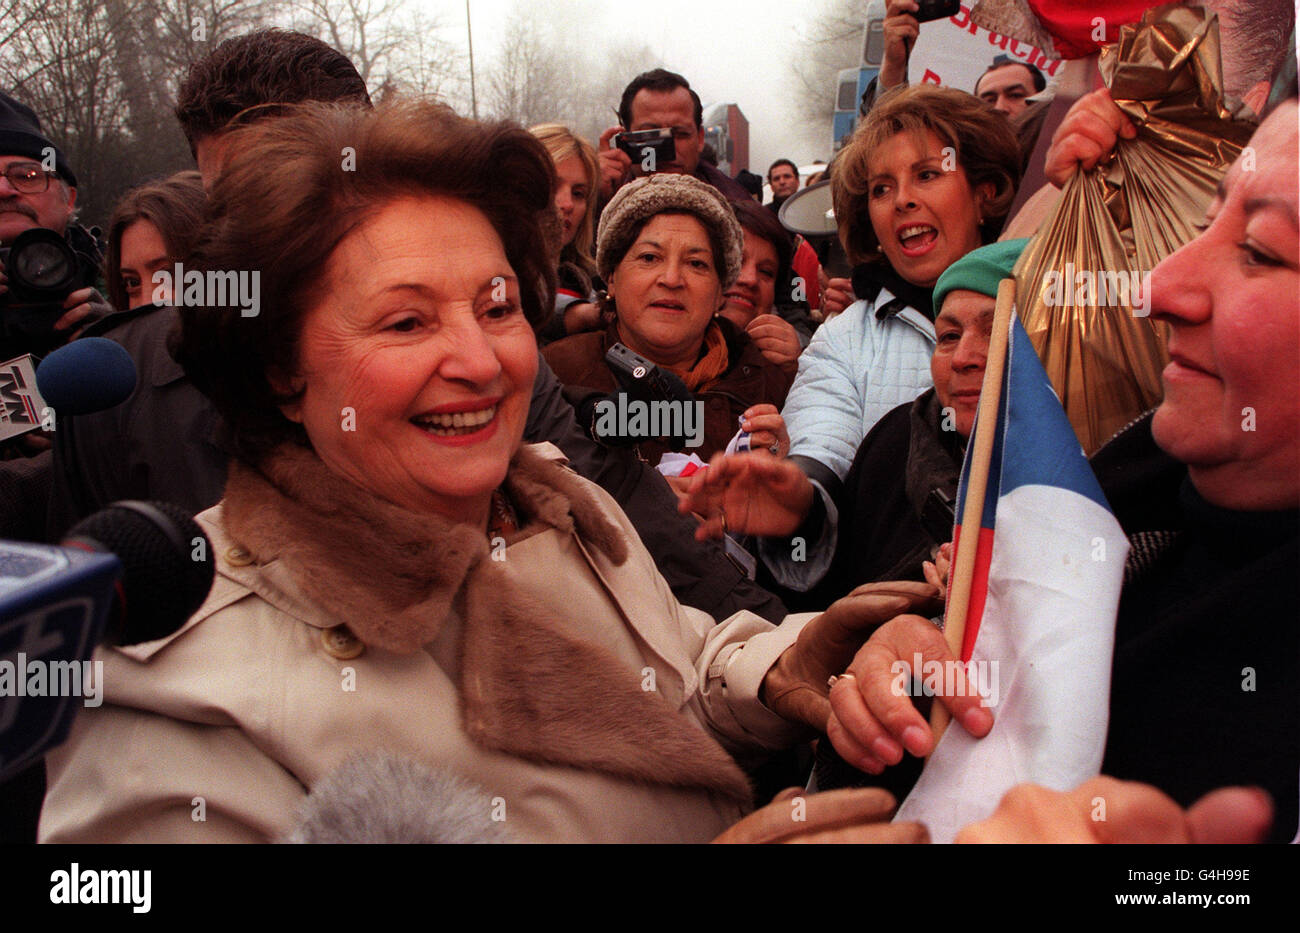 Lucia Pinochet, die Ehefrau von General Augusto Pinochet, dem ehemaligen chilenischen Diktator, trifft über 100 seiner Anhänger, nachdem sie in der Nähe seines Verstecks in Surrey mit ihnen gesprochen hat. Stockfoto